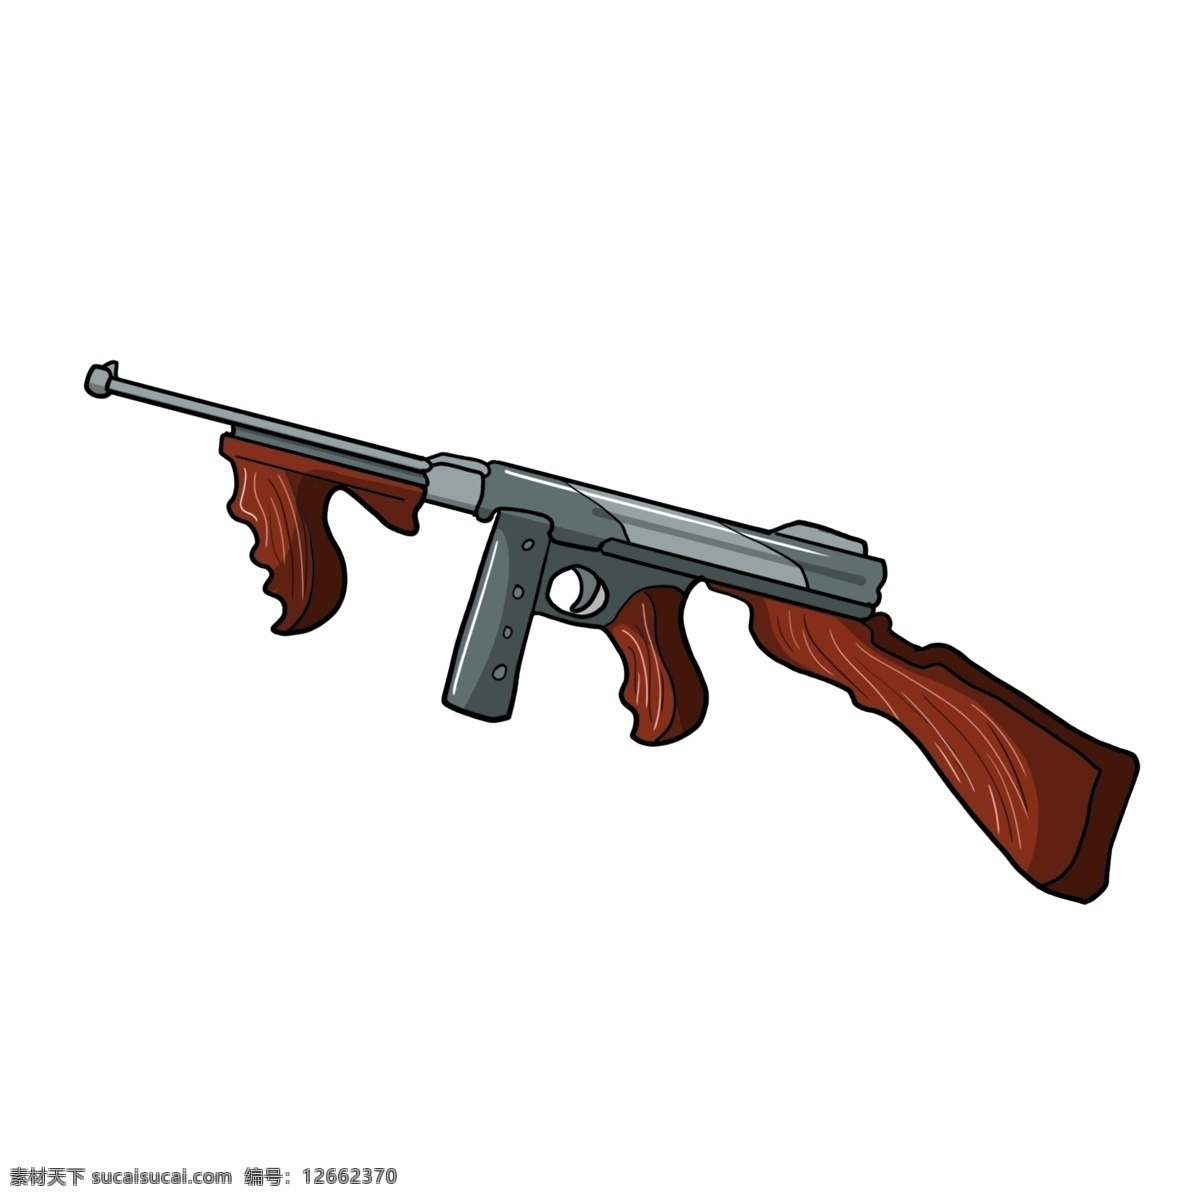 手绘 棕色 机关枪 插画 创意 精致的机关枪 现代化武器 枪托 枪坐 准星 卡簧 金属 子弹